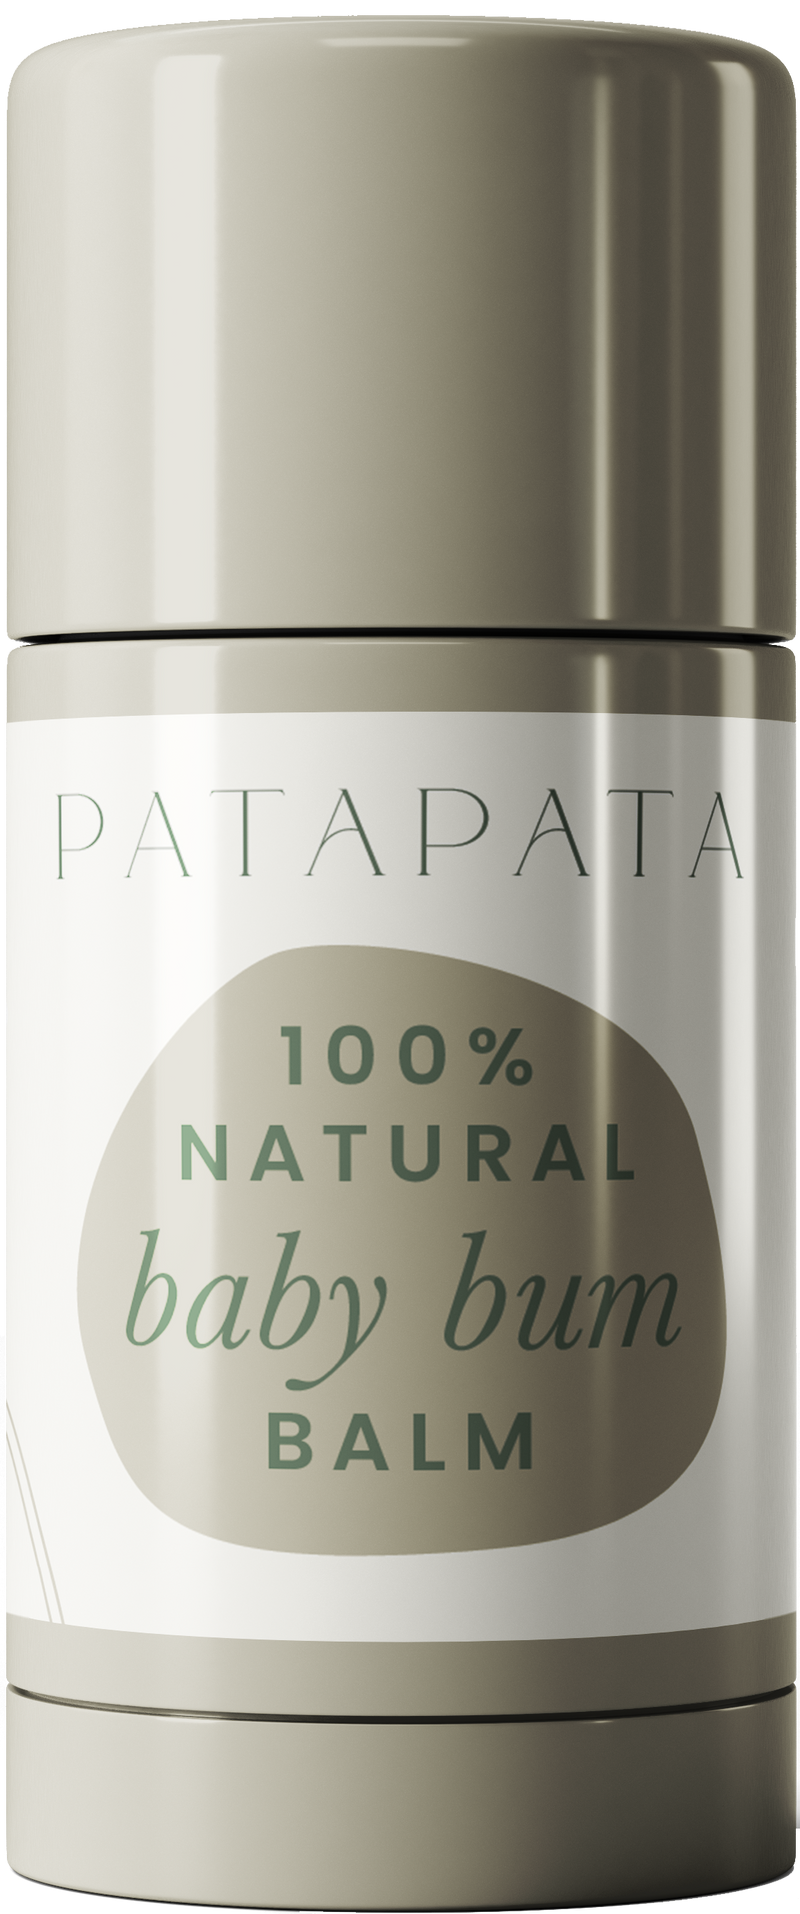 PataPata Natural Baby Bum Balm